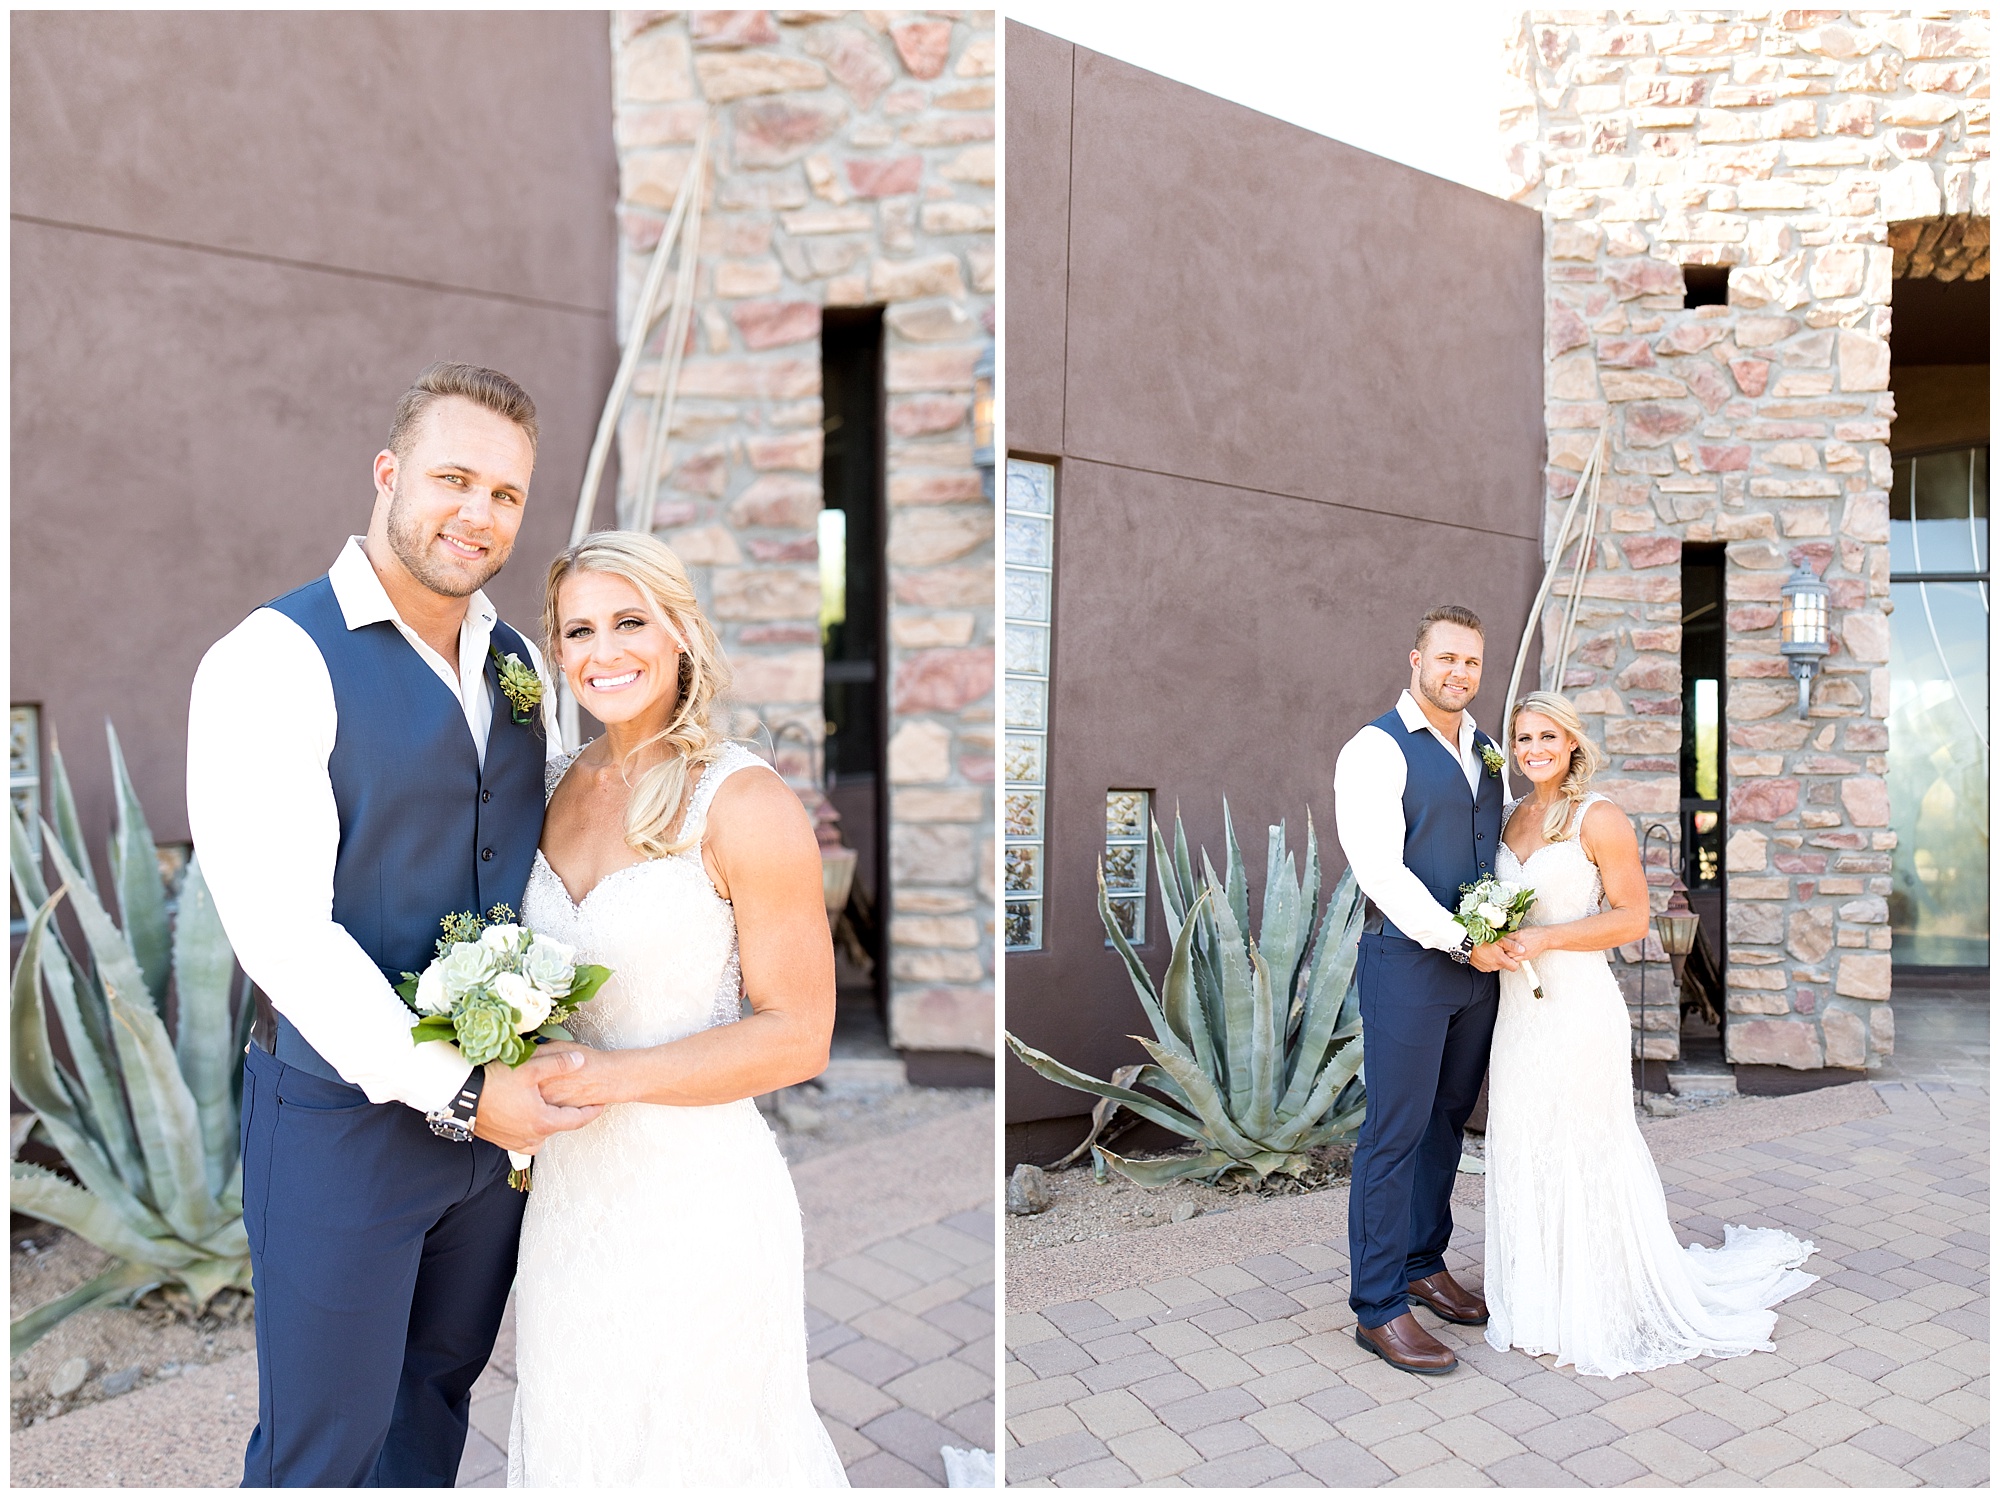 Kelly & Sam's Scottsdale Backyard Wedding